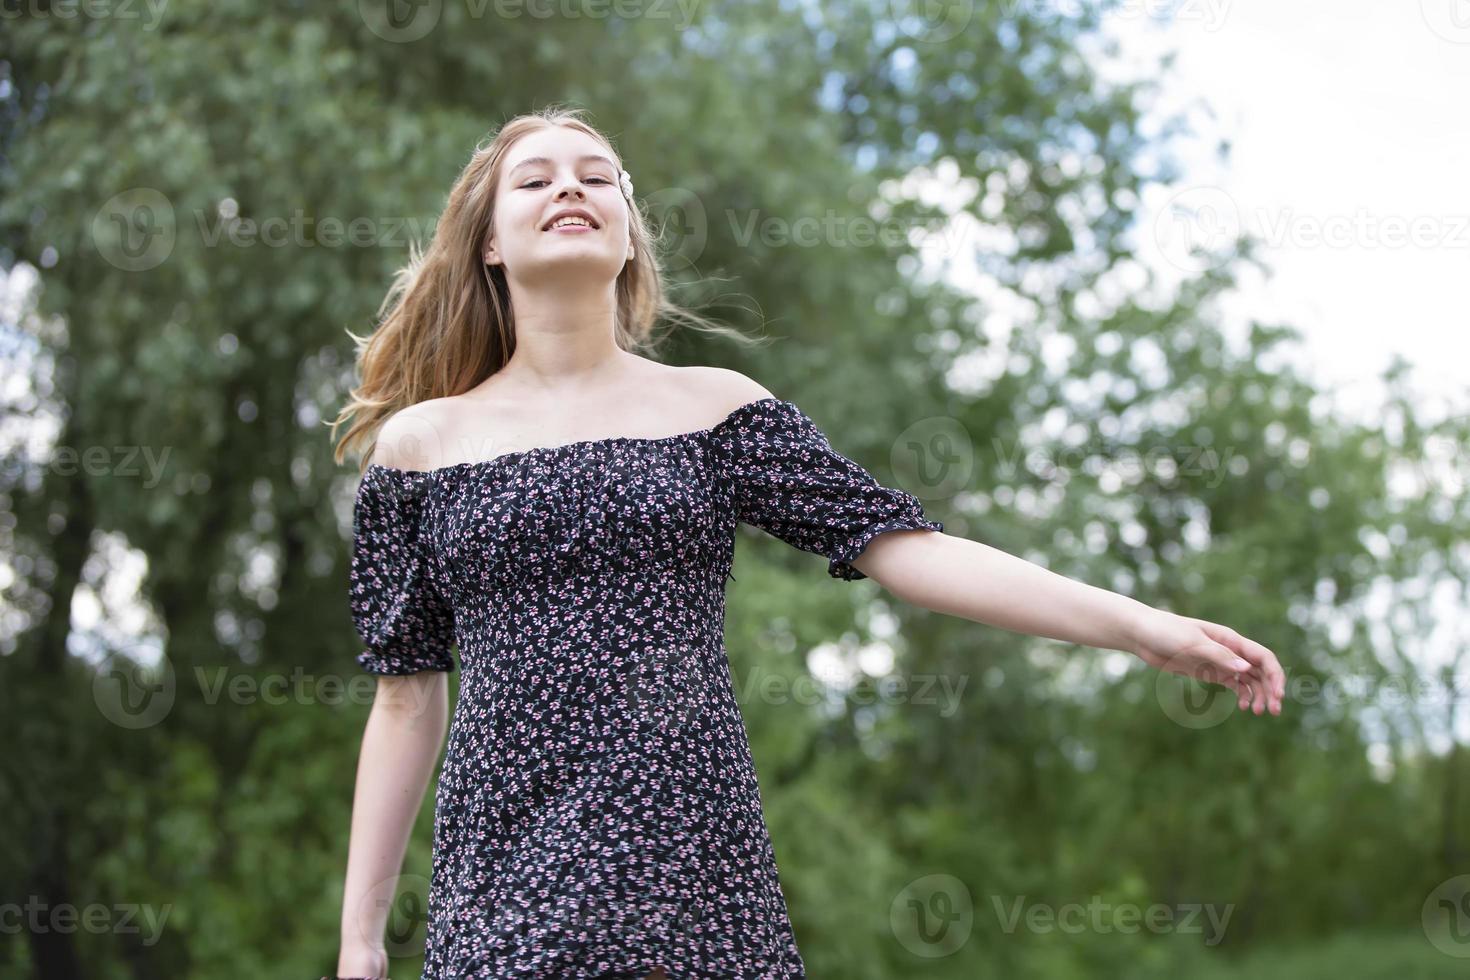 jovem feliz em um vestido romântico em um prado verde de verão. linda garota adolescente sorri e olha para a câmera. foto